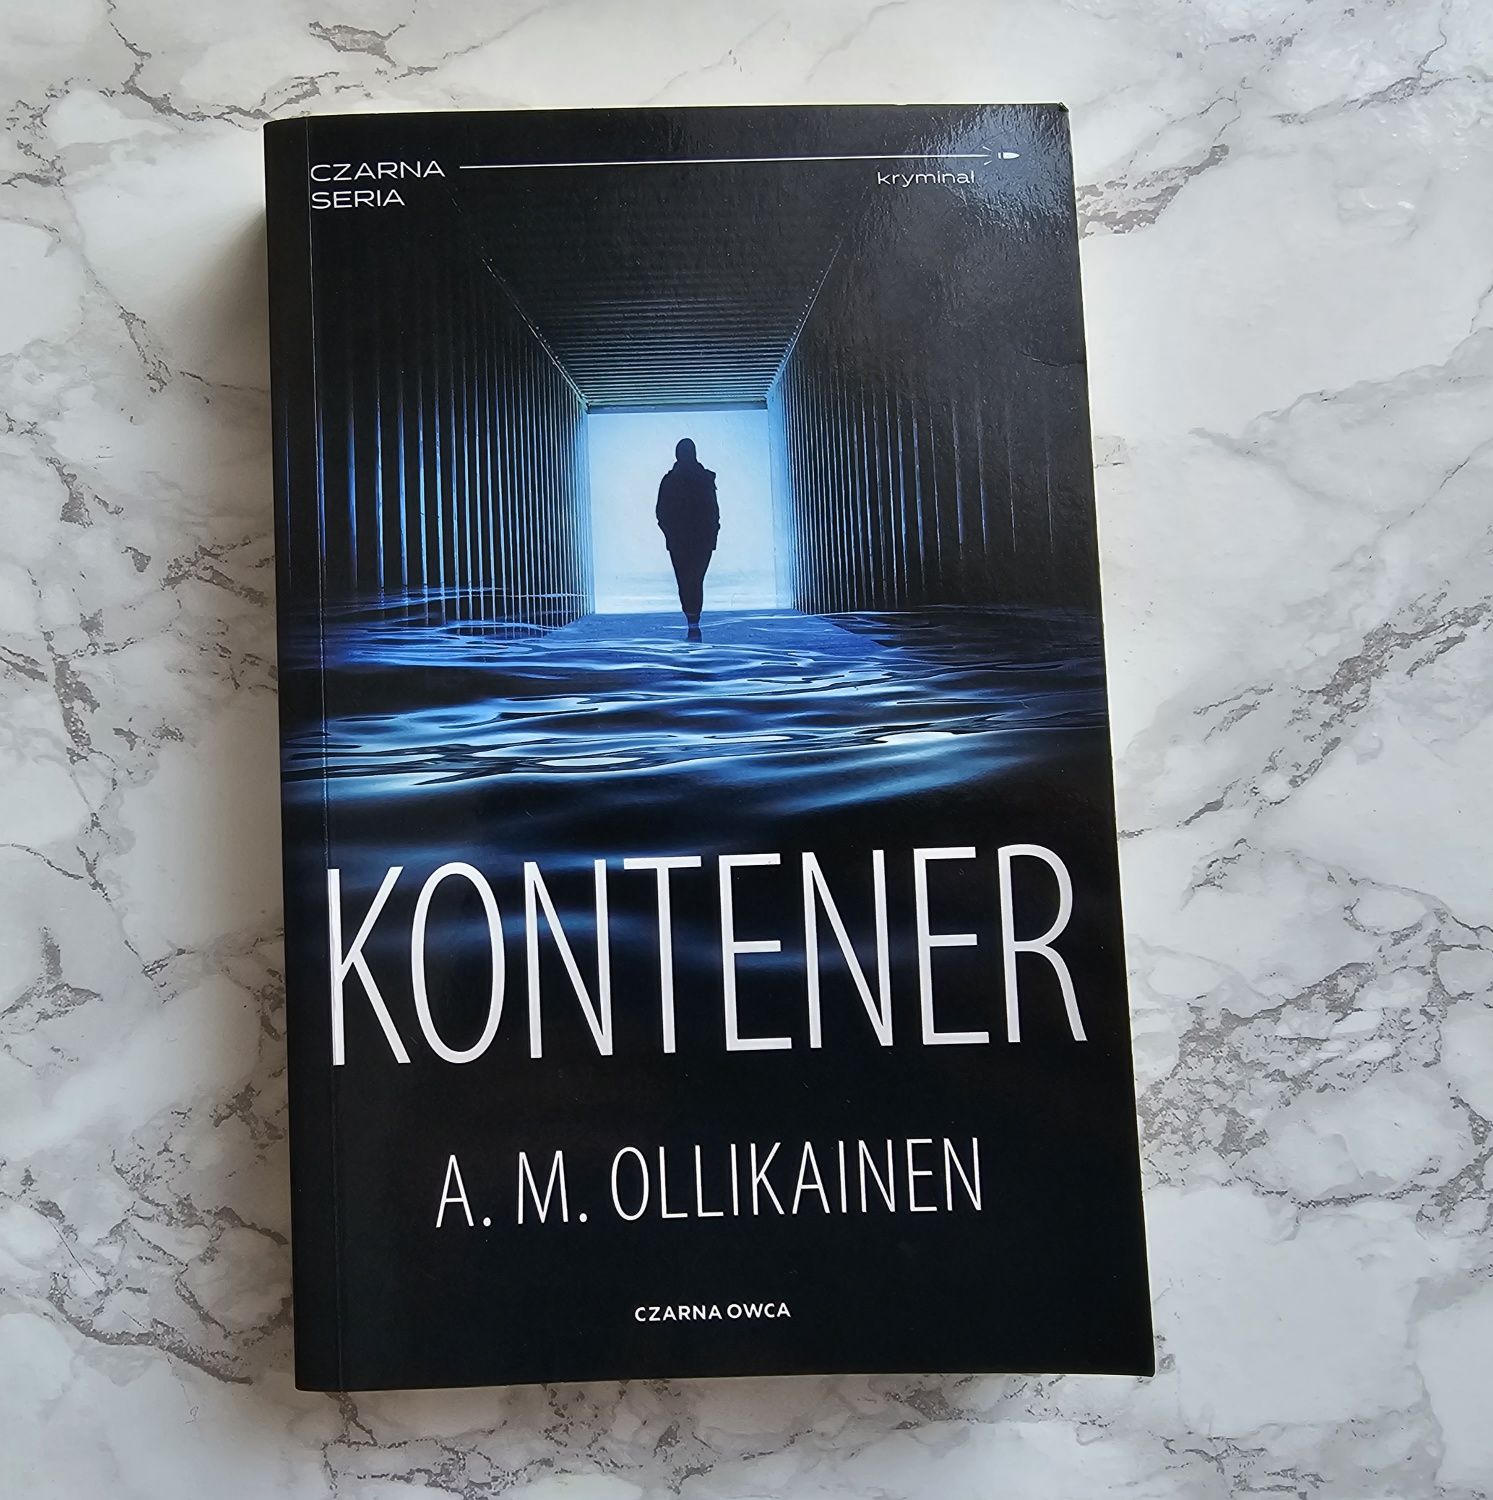 Książka "Kontener" A. M. Ollikainen, kryminał